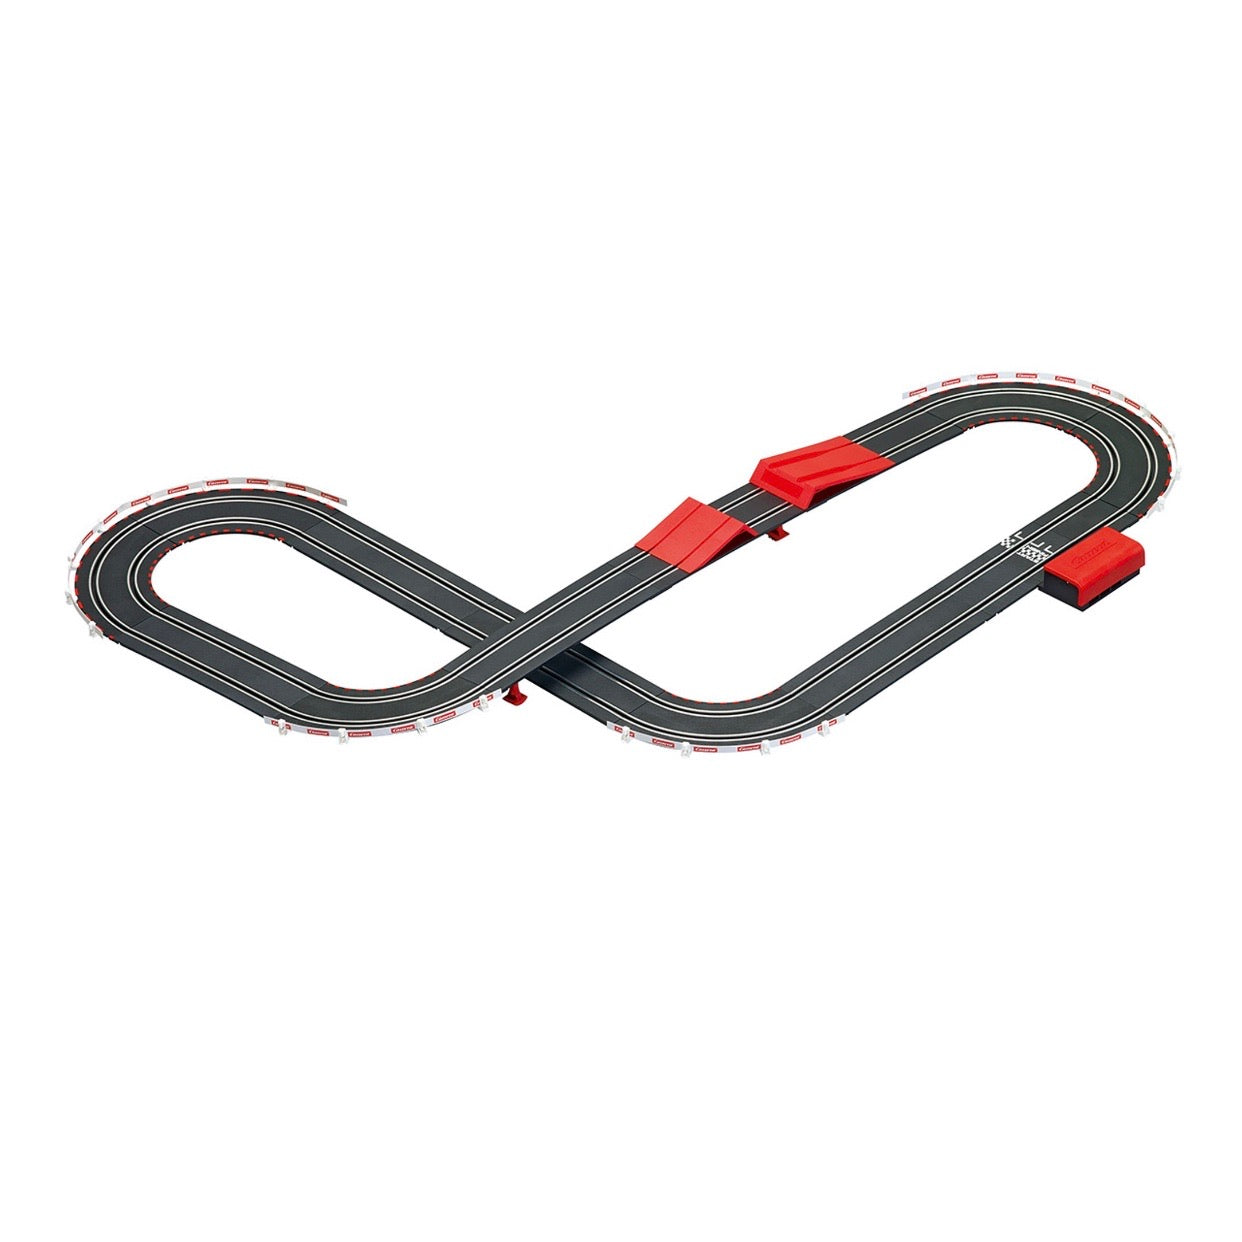 Carrera Battery Operated Speed Trap Slot Car Race Track Set - El Mercado de Juguetes